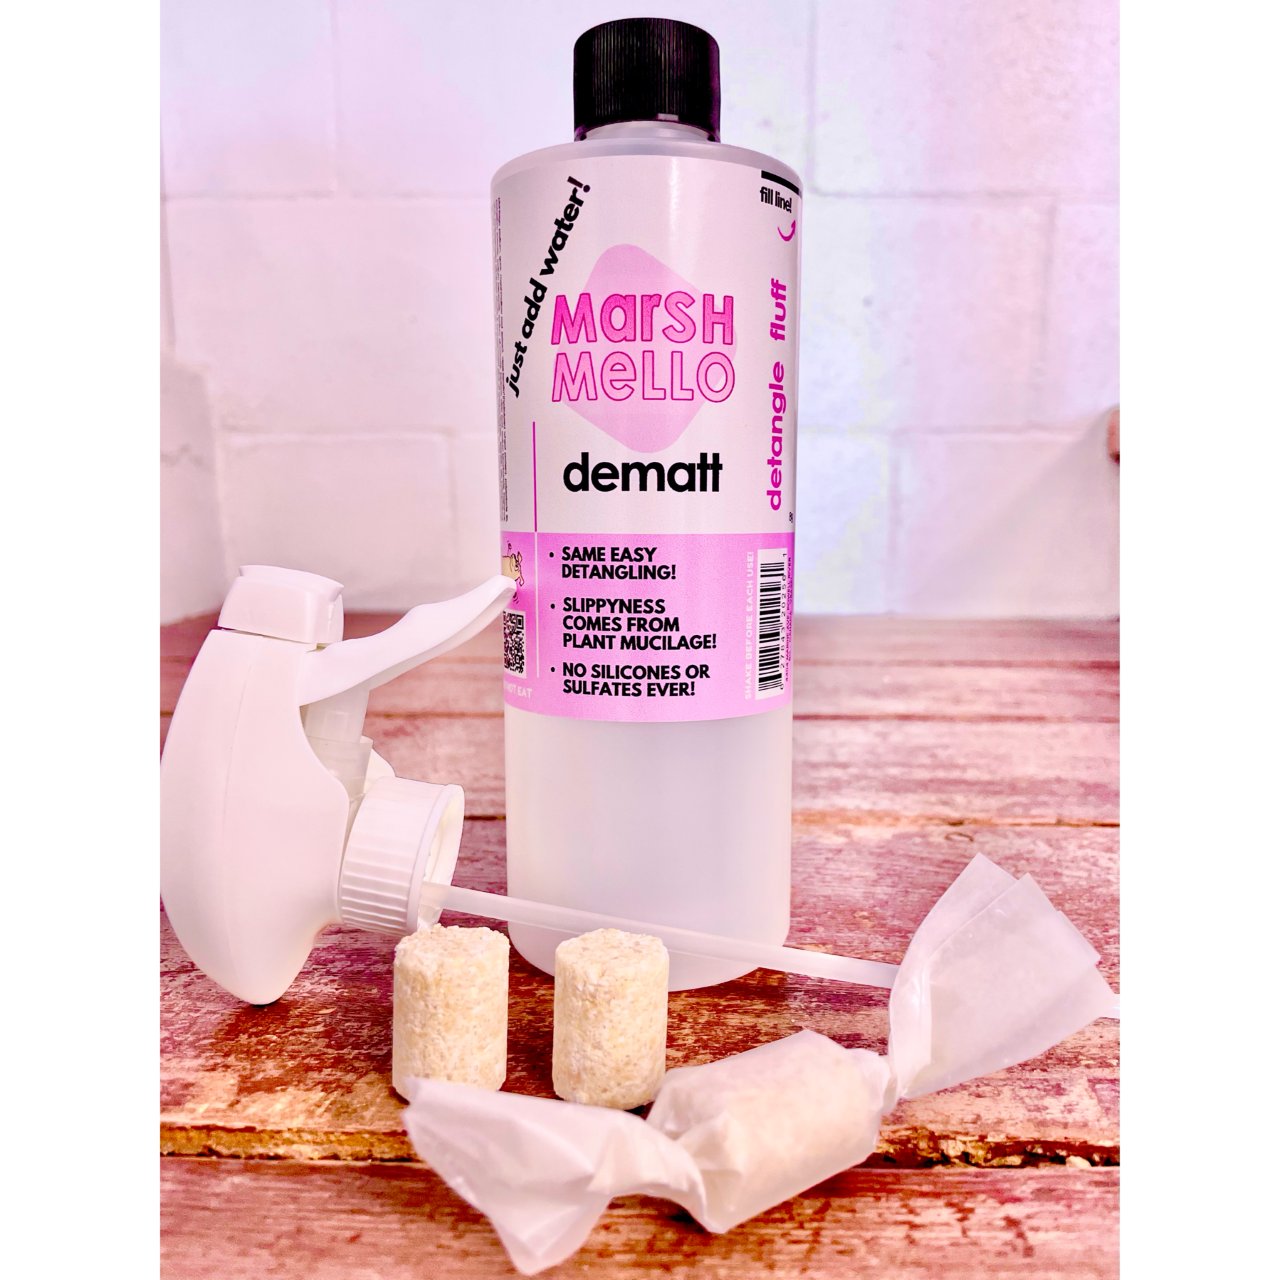 MarshMello Dematt plant based detangling spray with 3 detangling pods